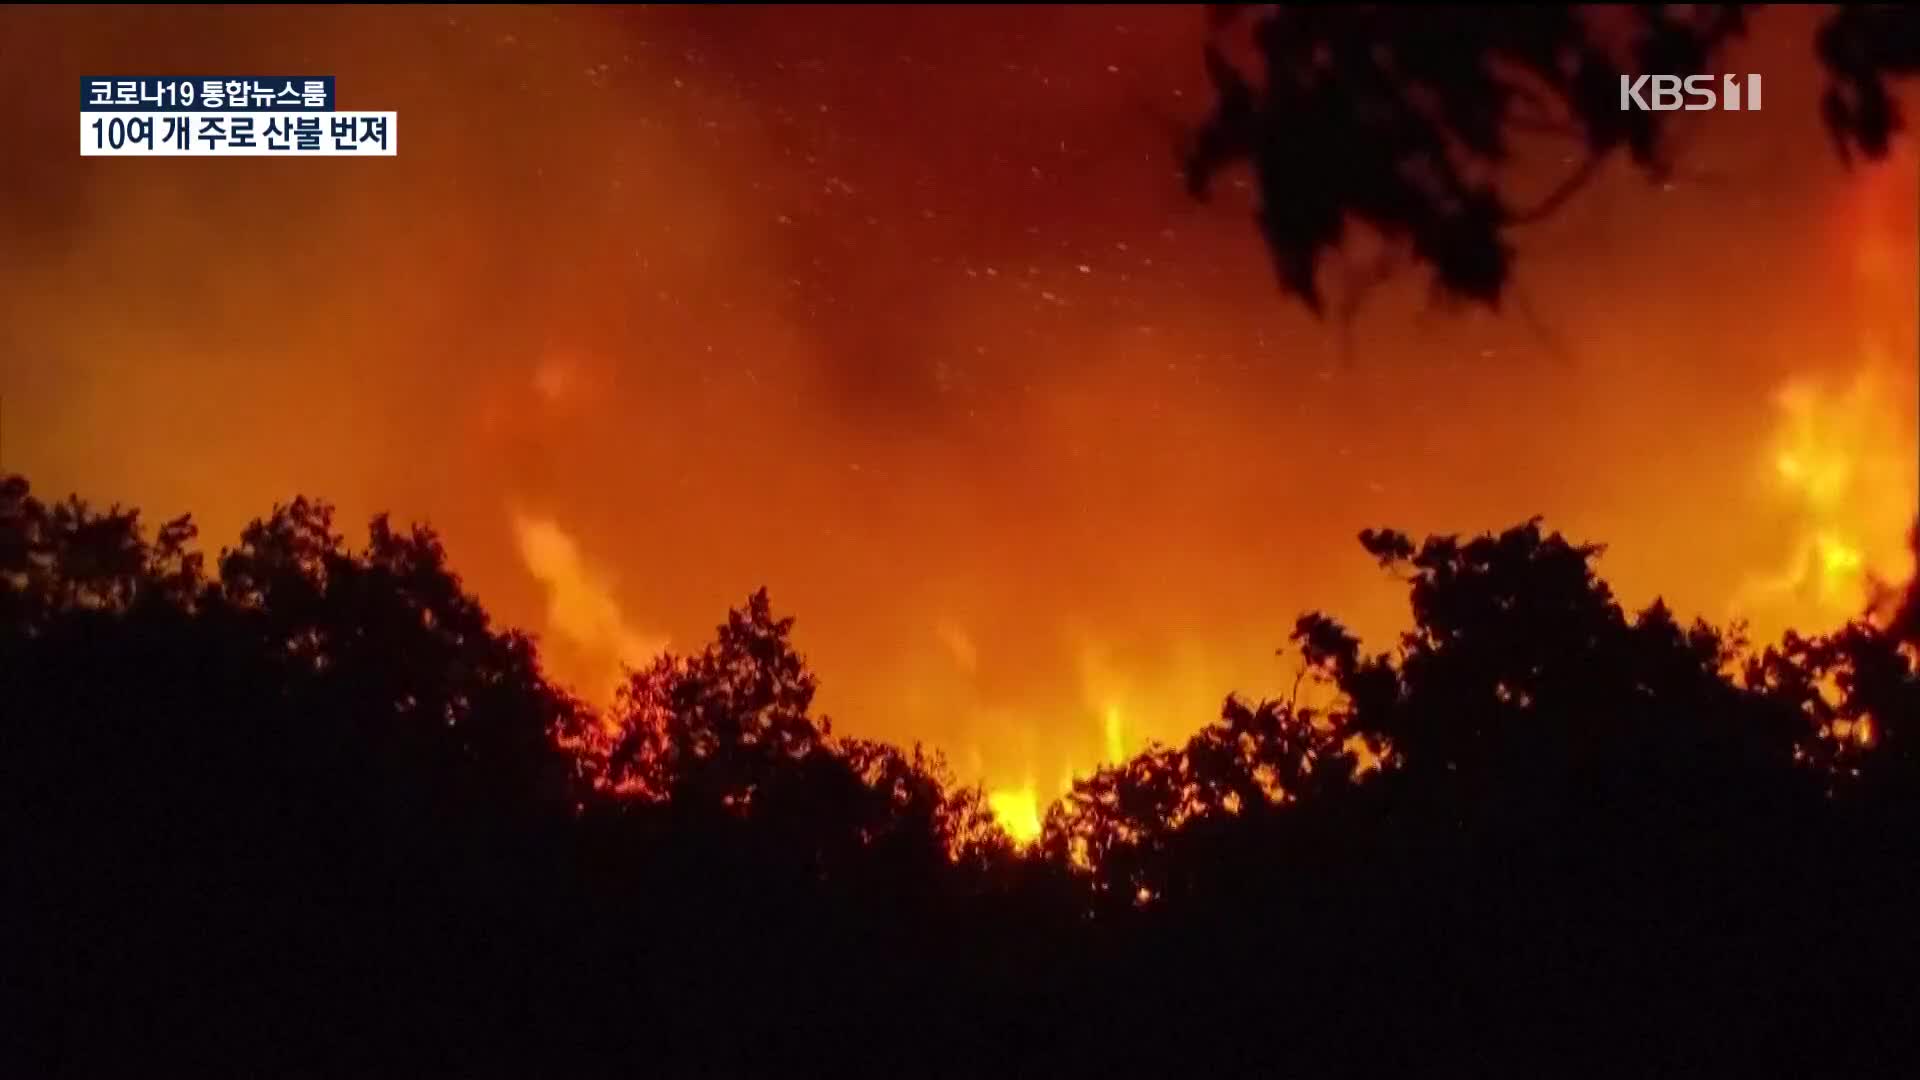 美 산불로 대기질 최악…트럼프, 애먼 ‘산림 관리’ 탓